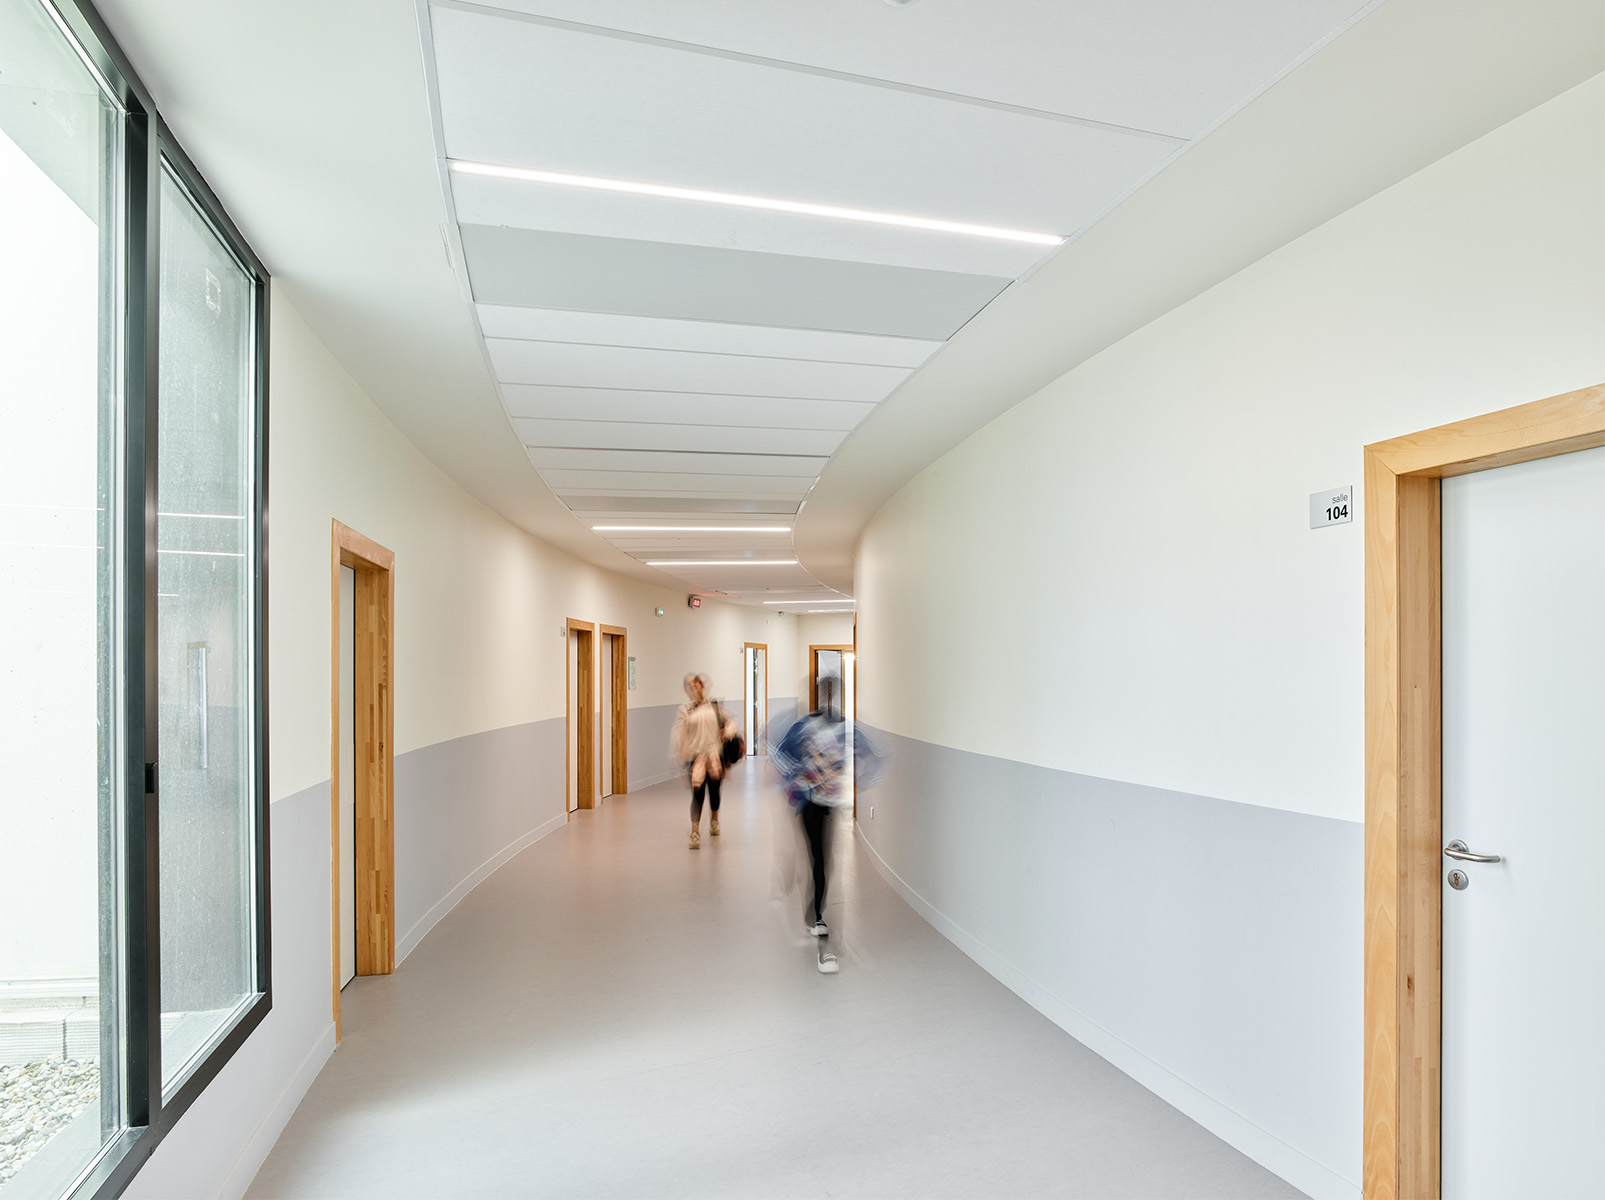 Photographie face à la courbe d'un couloir blanc et gris clair en partie basse et menuiserie bois, des collégien·nes marchent dans un mouvement flou